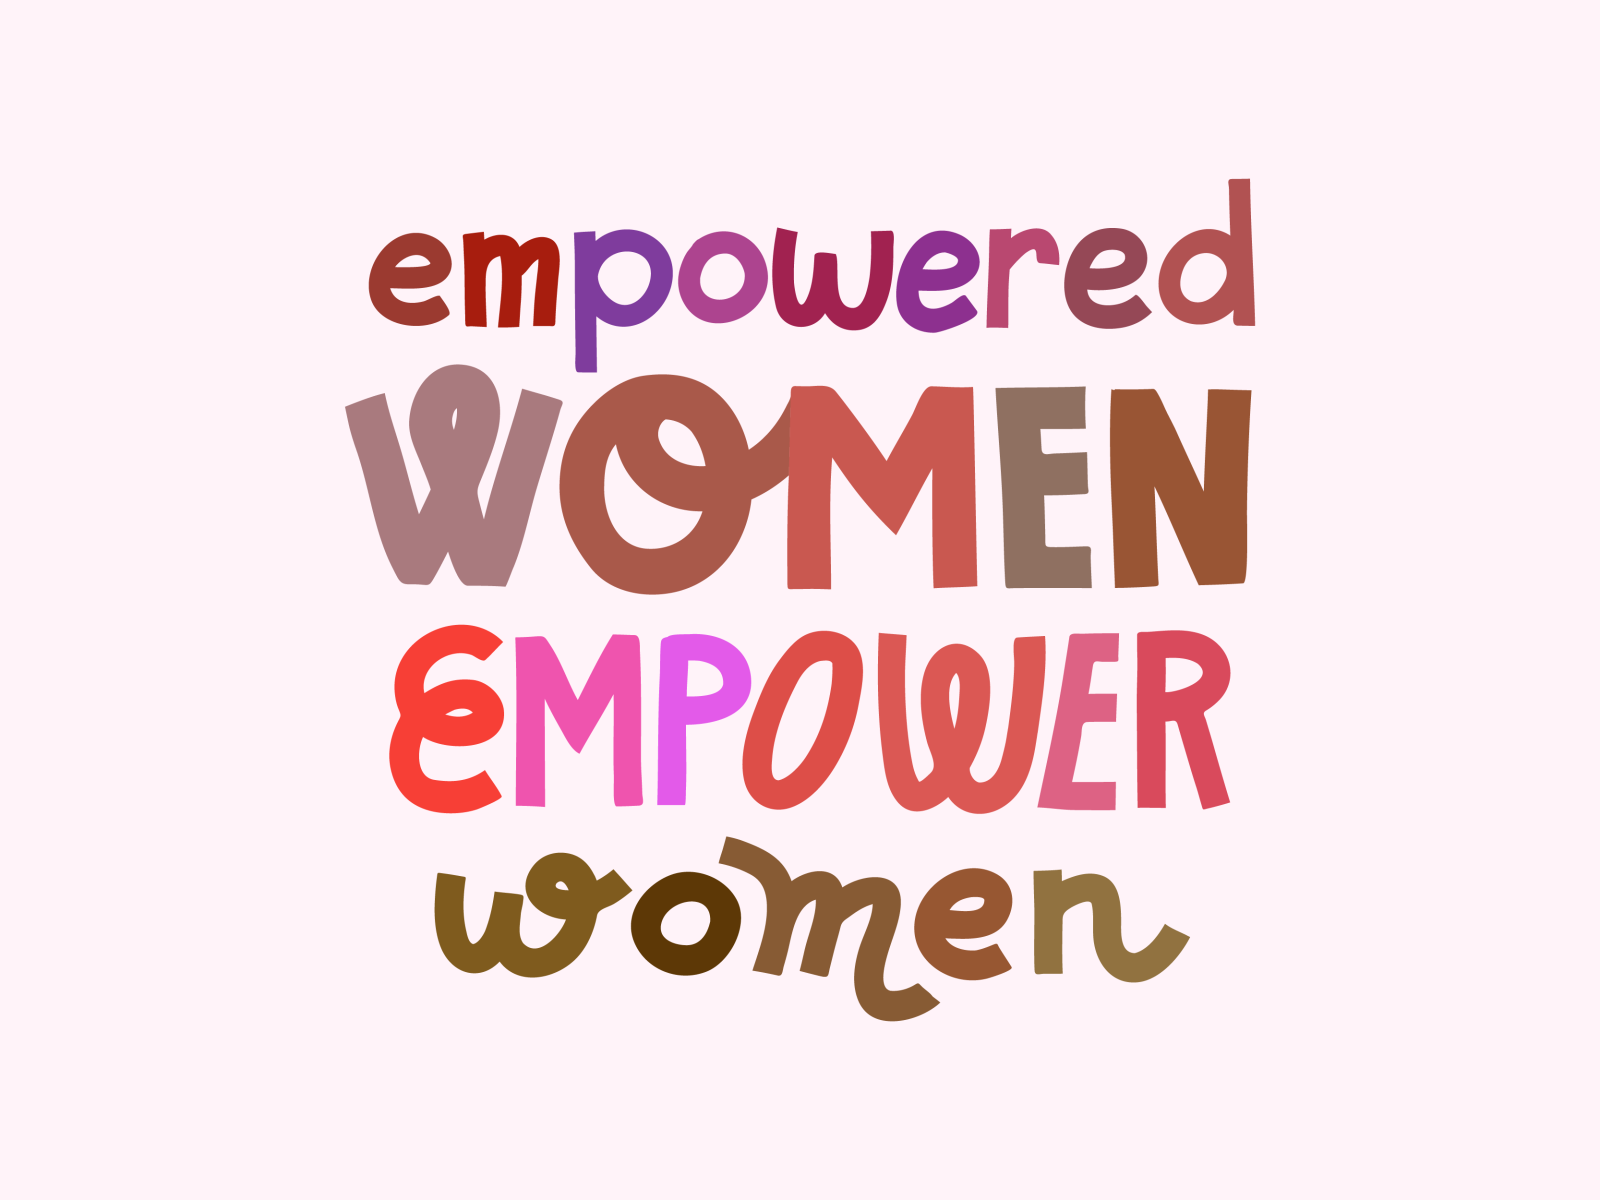 4. "Empowered women empower women" - wide 2